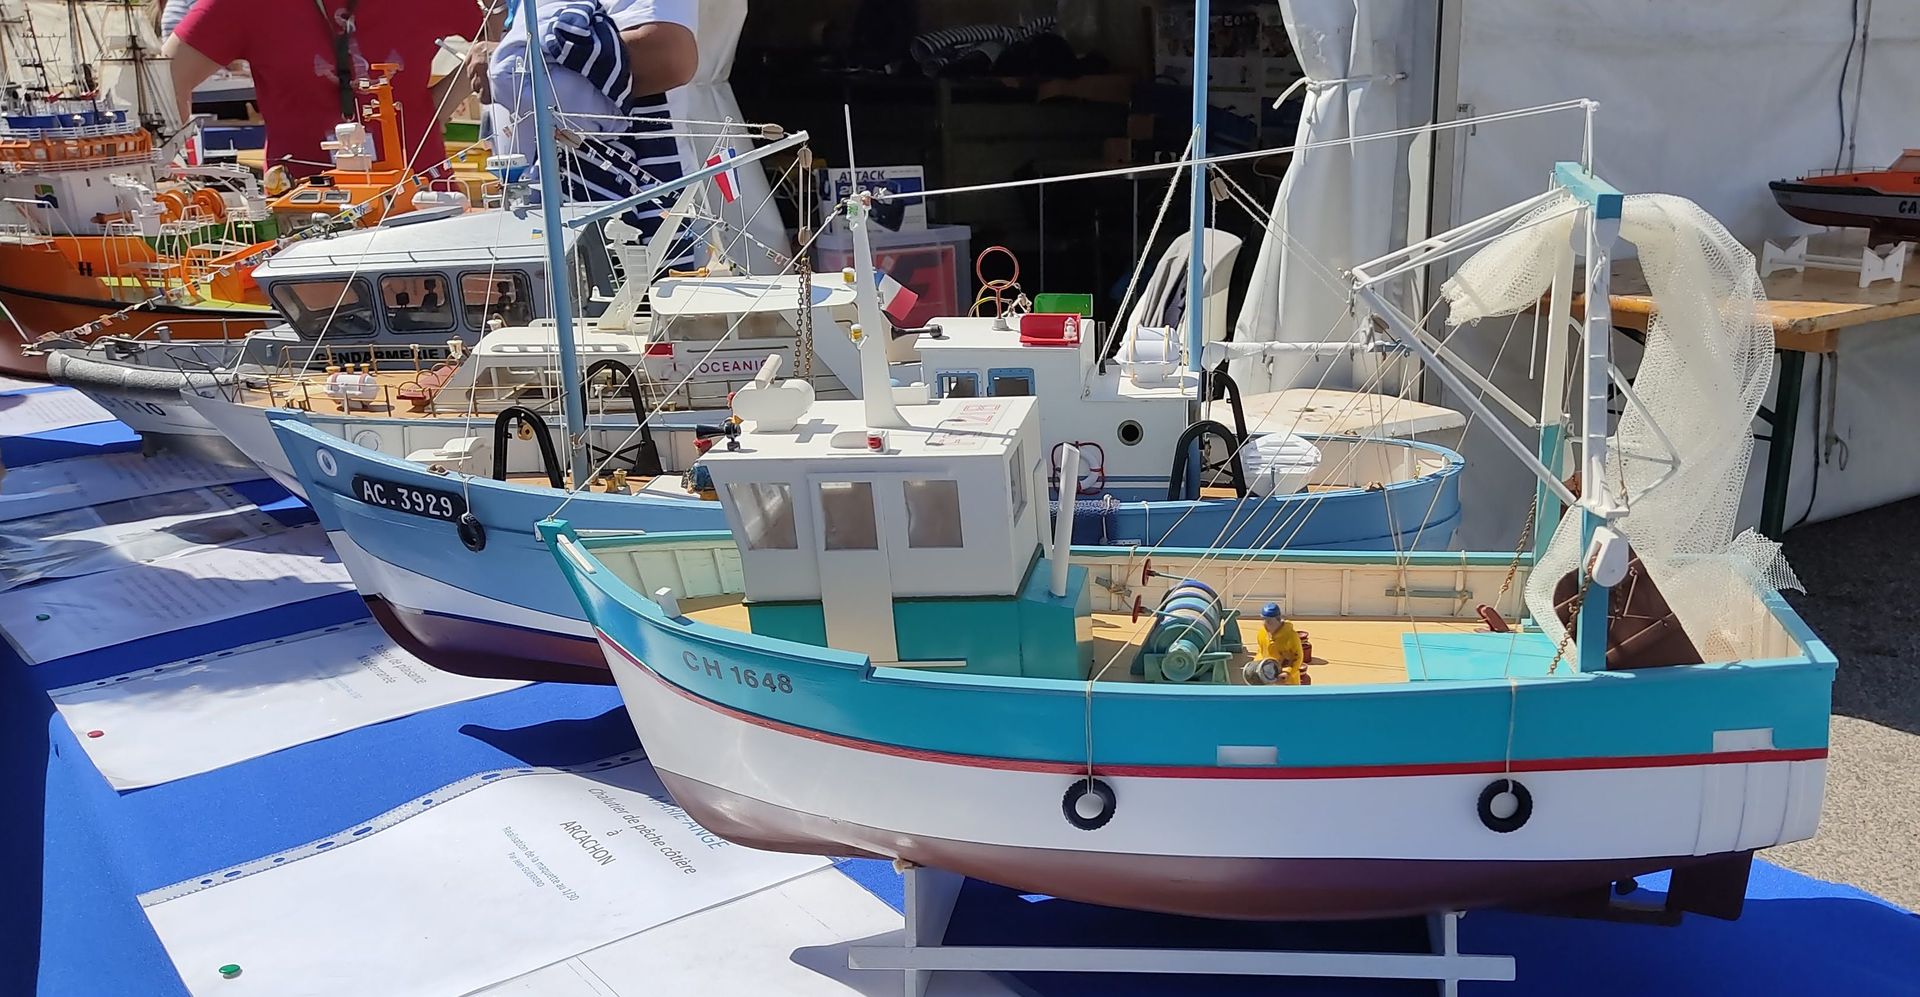 Maquettes de bateaux exposés à Escale à Sète, la fête des traditions internationales maritimes